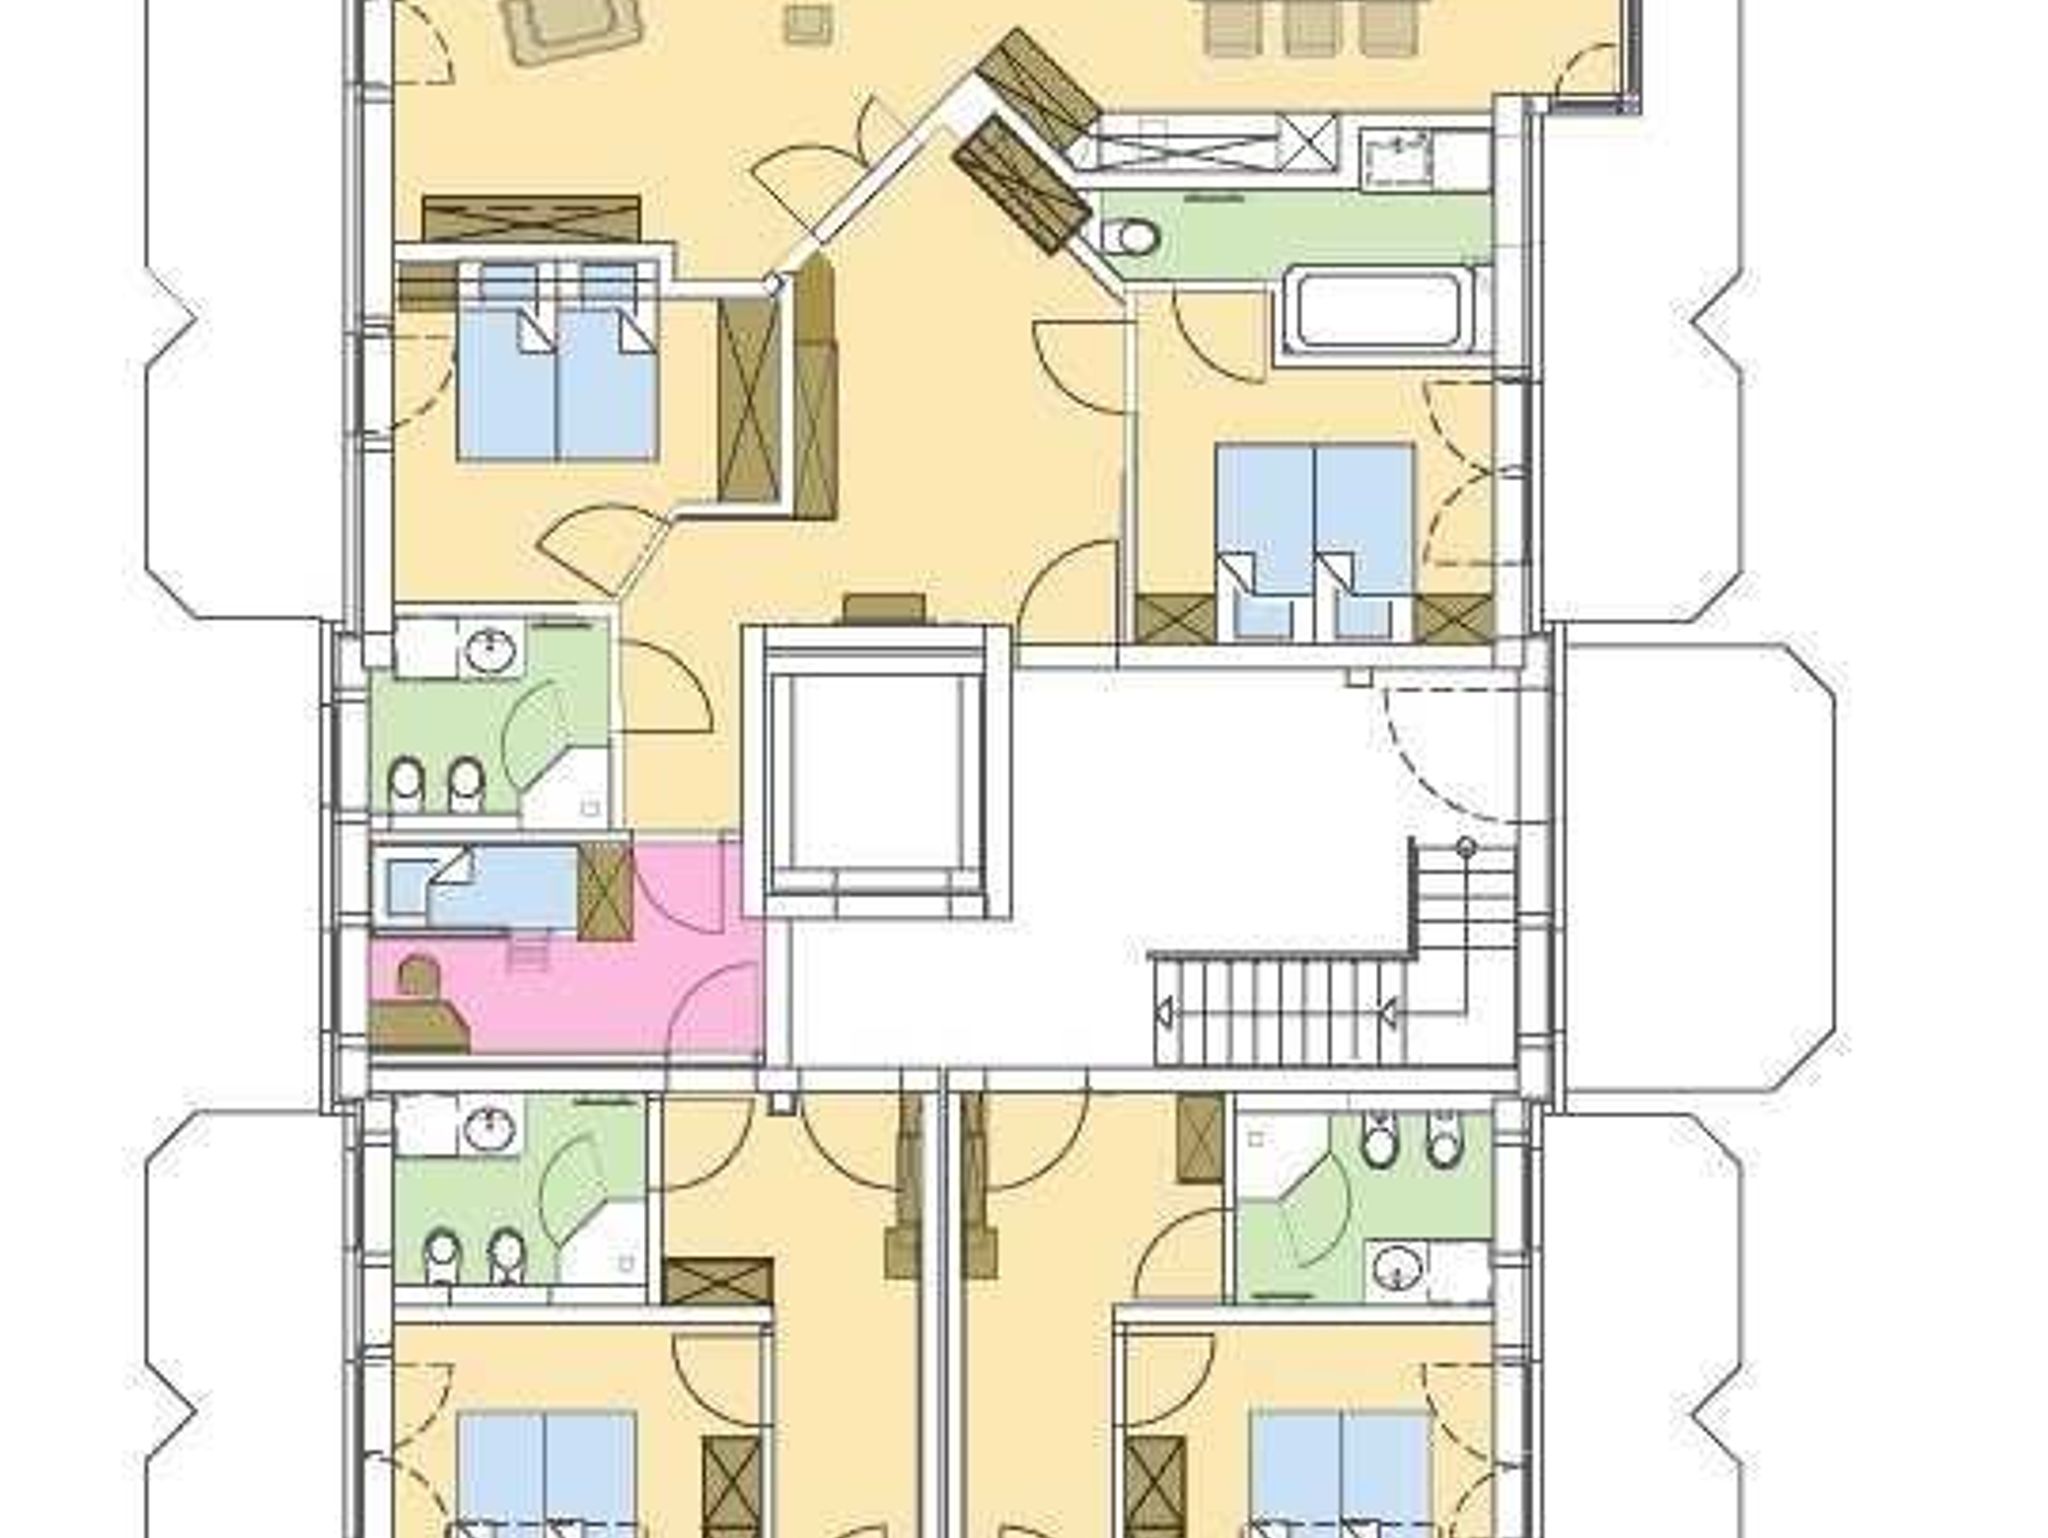 Strandresidenz-Kühlungsborn***** Grundriss der Wohnungen 1, 2 und 3. Das rosa gekennzeichnete Zimmer zwischen den  Wohnungen 1 und 2 ist ein Kinderzimmer, daß von beiden Wohnungen genutzt werden kann.